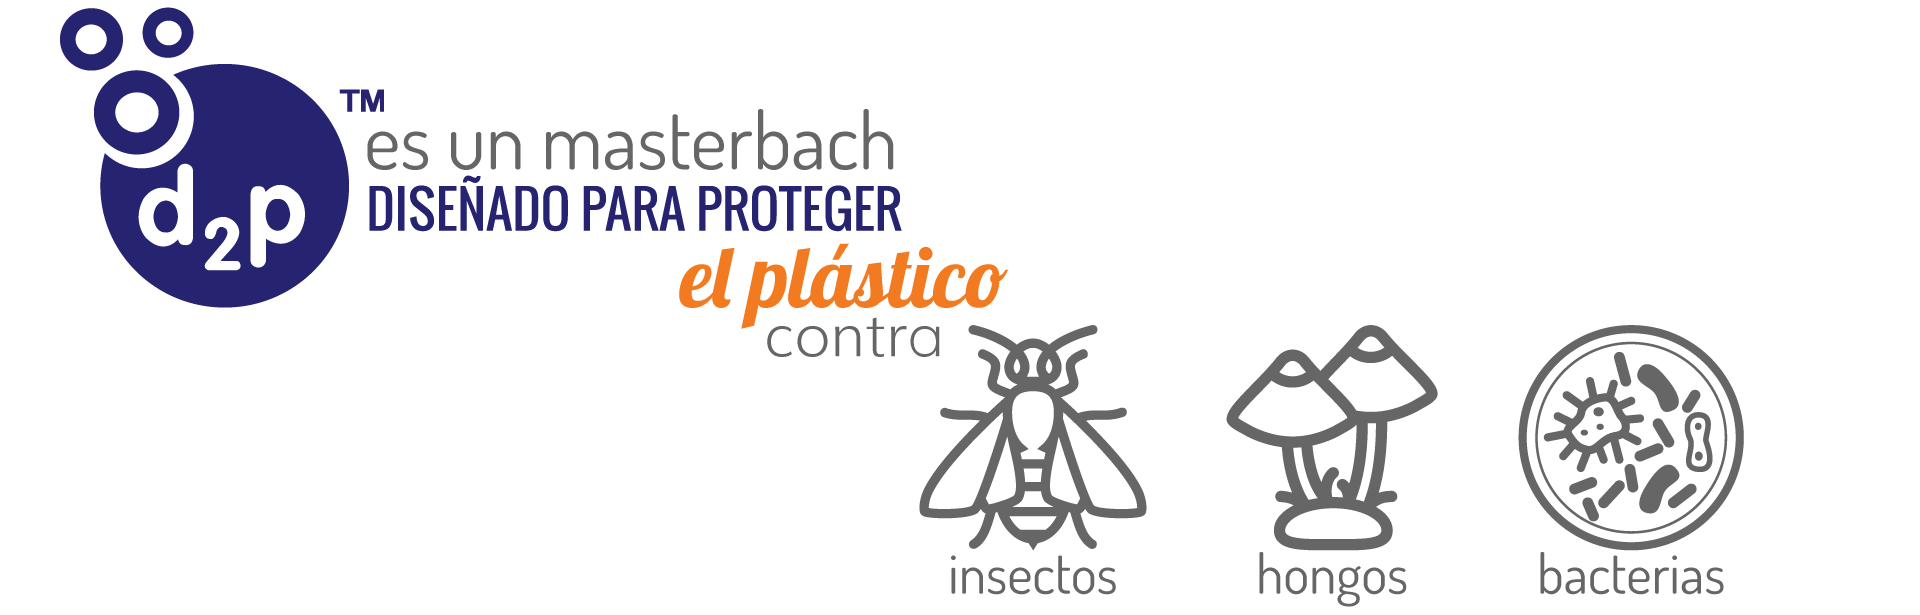 Masterbach diseñado para proteger el plástico contra insectos, hongos y bacterias